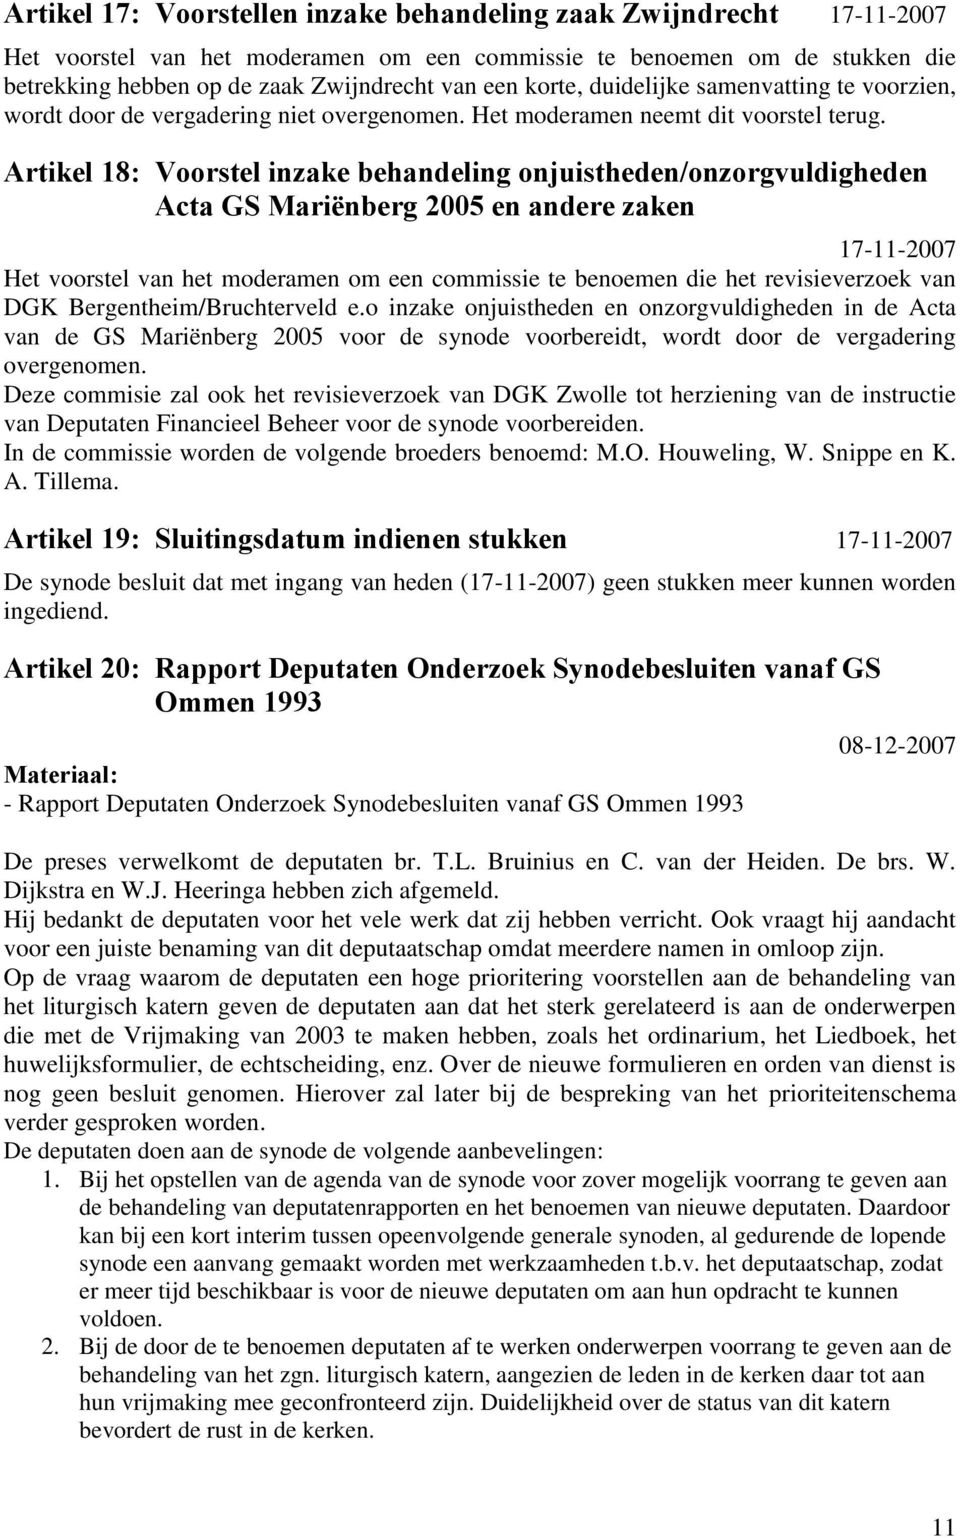 Artikel 18: Voorstel inzake behandeling onjuistheden/onzorgvuldigheden Acta GS Mariënberg 2005 en andere zaken 17-11-2007 Het voorstel van het moderamen om een commissie te benoemen die het